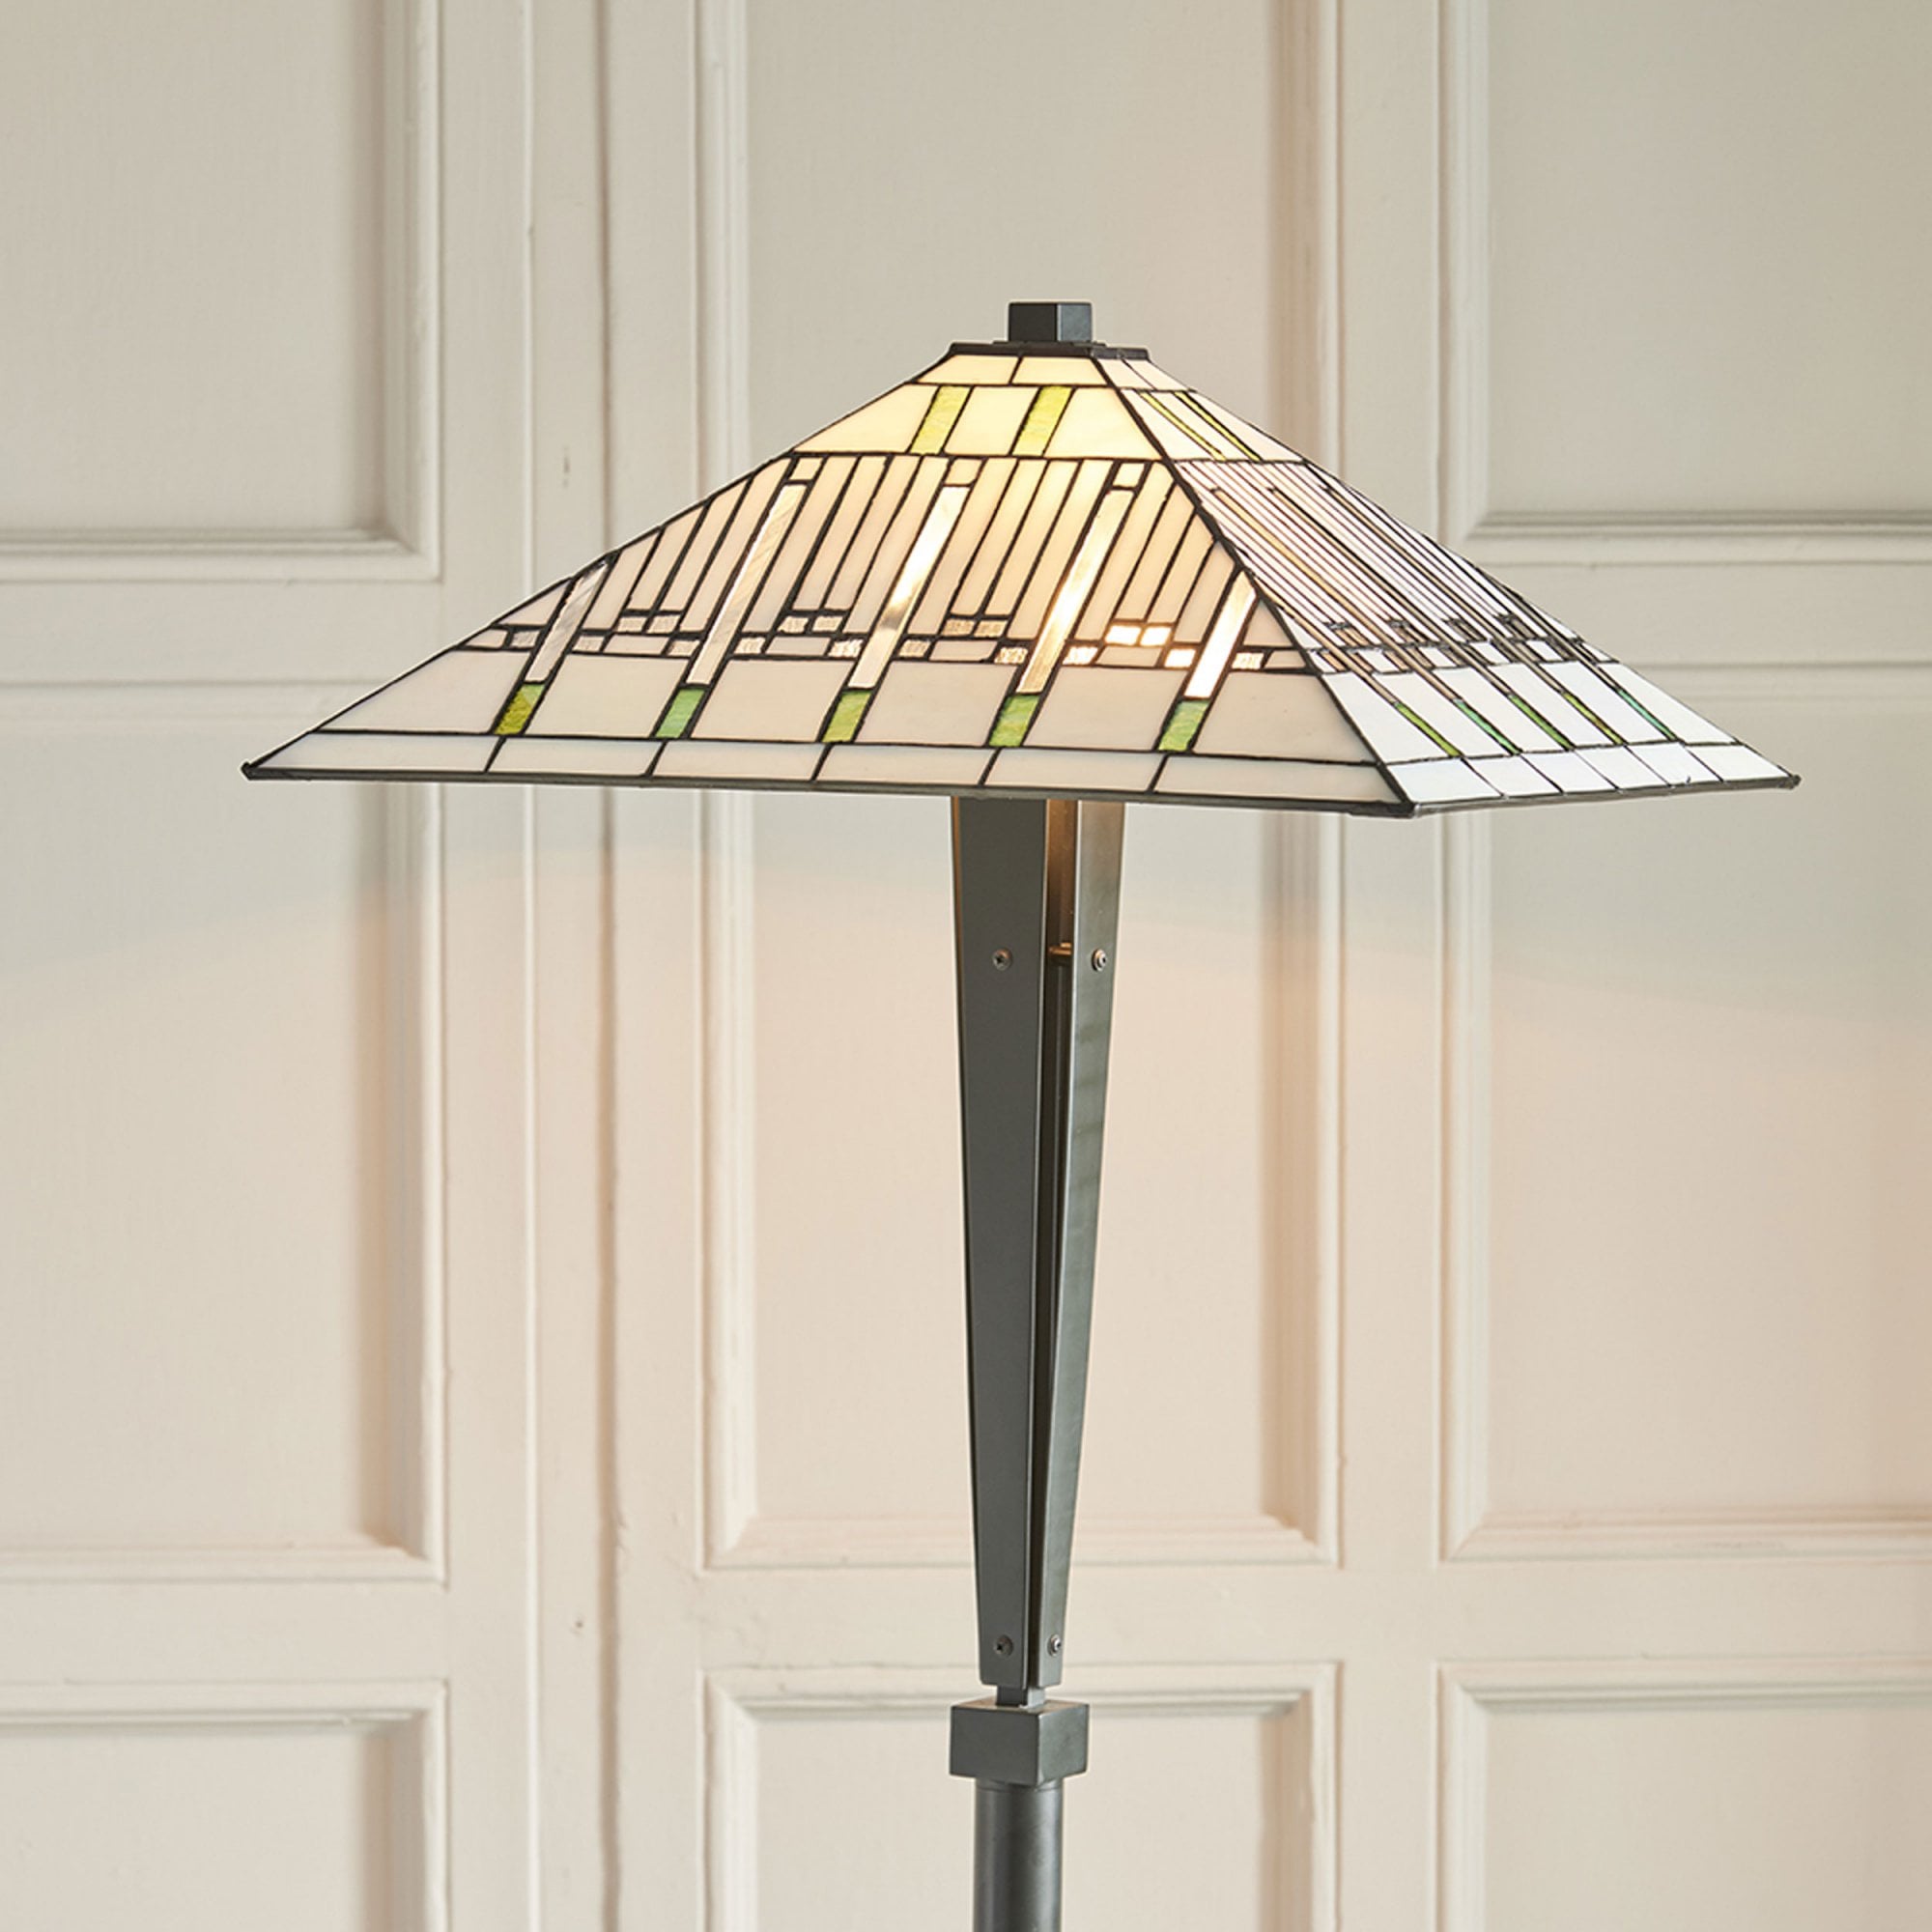 Klasyczna lampa witrażowa z geometrycznym wzorem, idealna do salonu w stylu retro